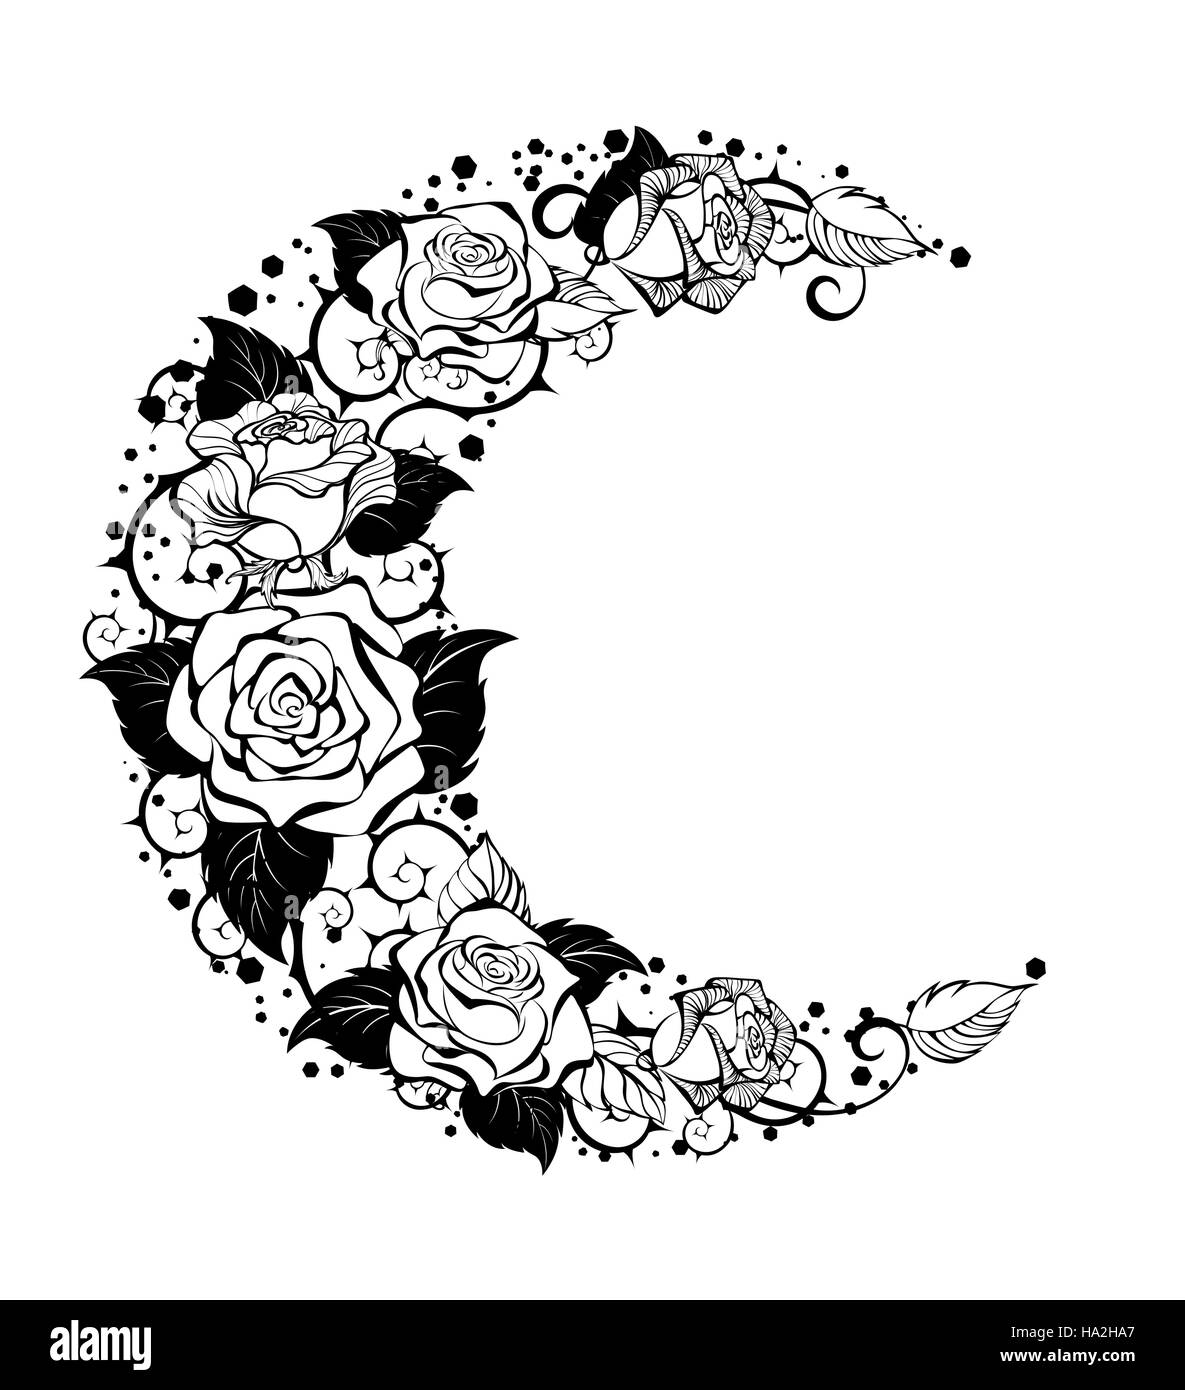 Lune mystique peintes en noir et contour tiges roses sur un fond blanc. Conception avec roses. Style de tatouage. De style gothique. Graphiques tribaux. Ske Style Illustration de Vecteur